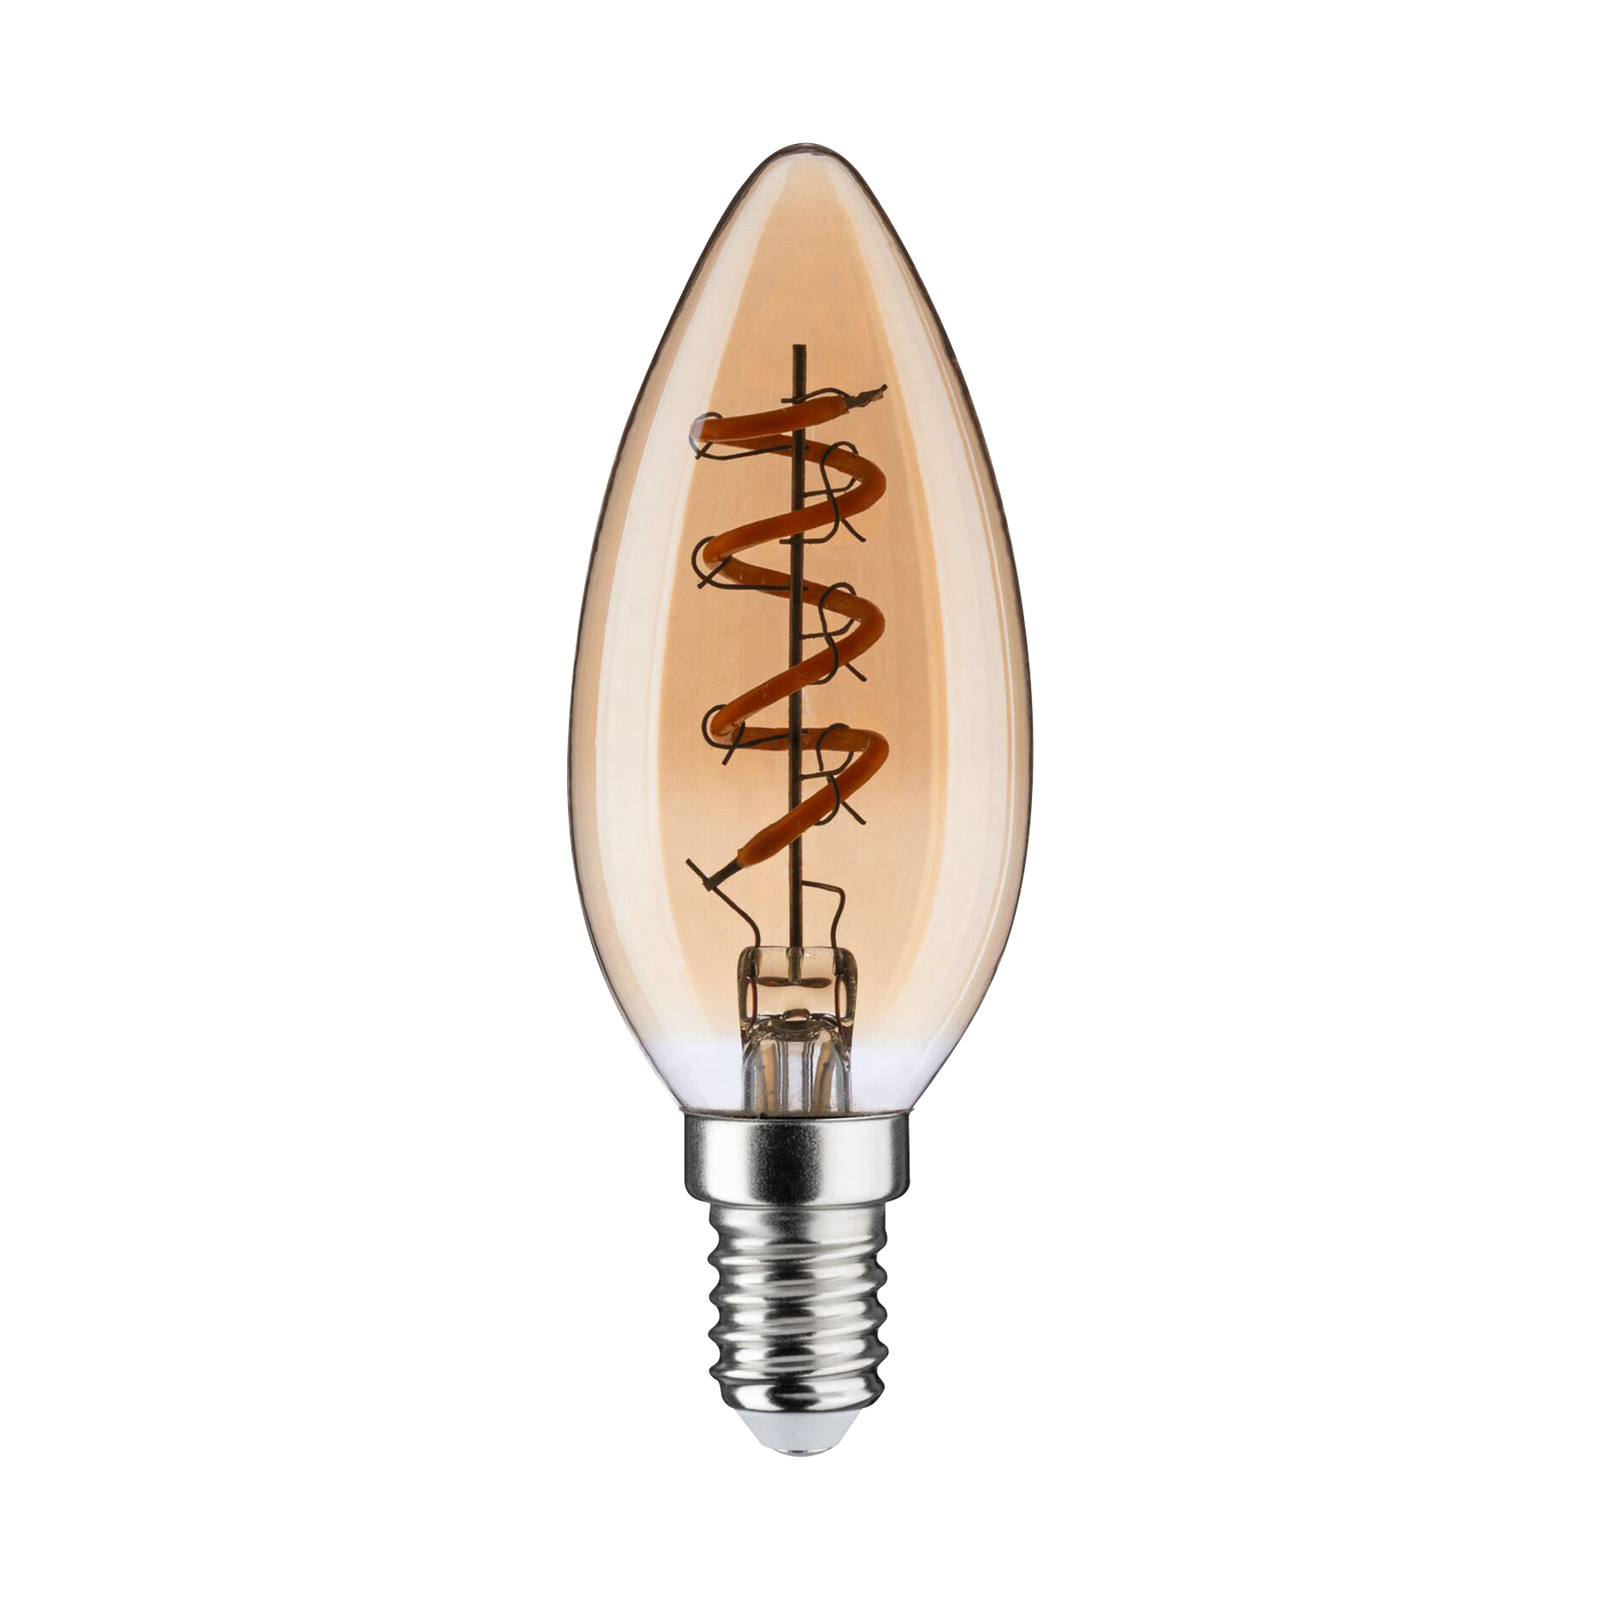 Paulmann LED candle bulb E14 4 W 1,800 K gold